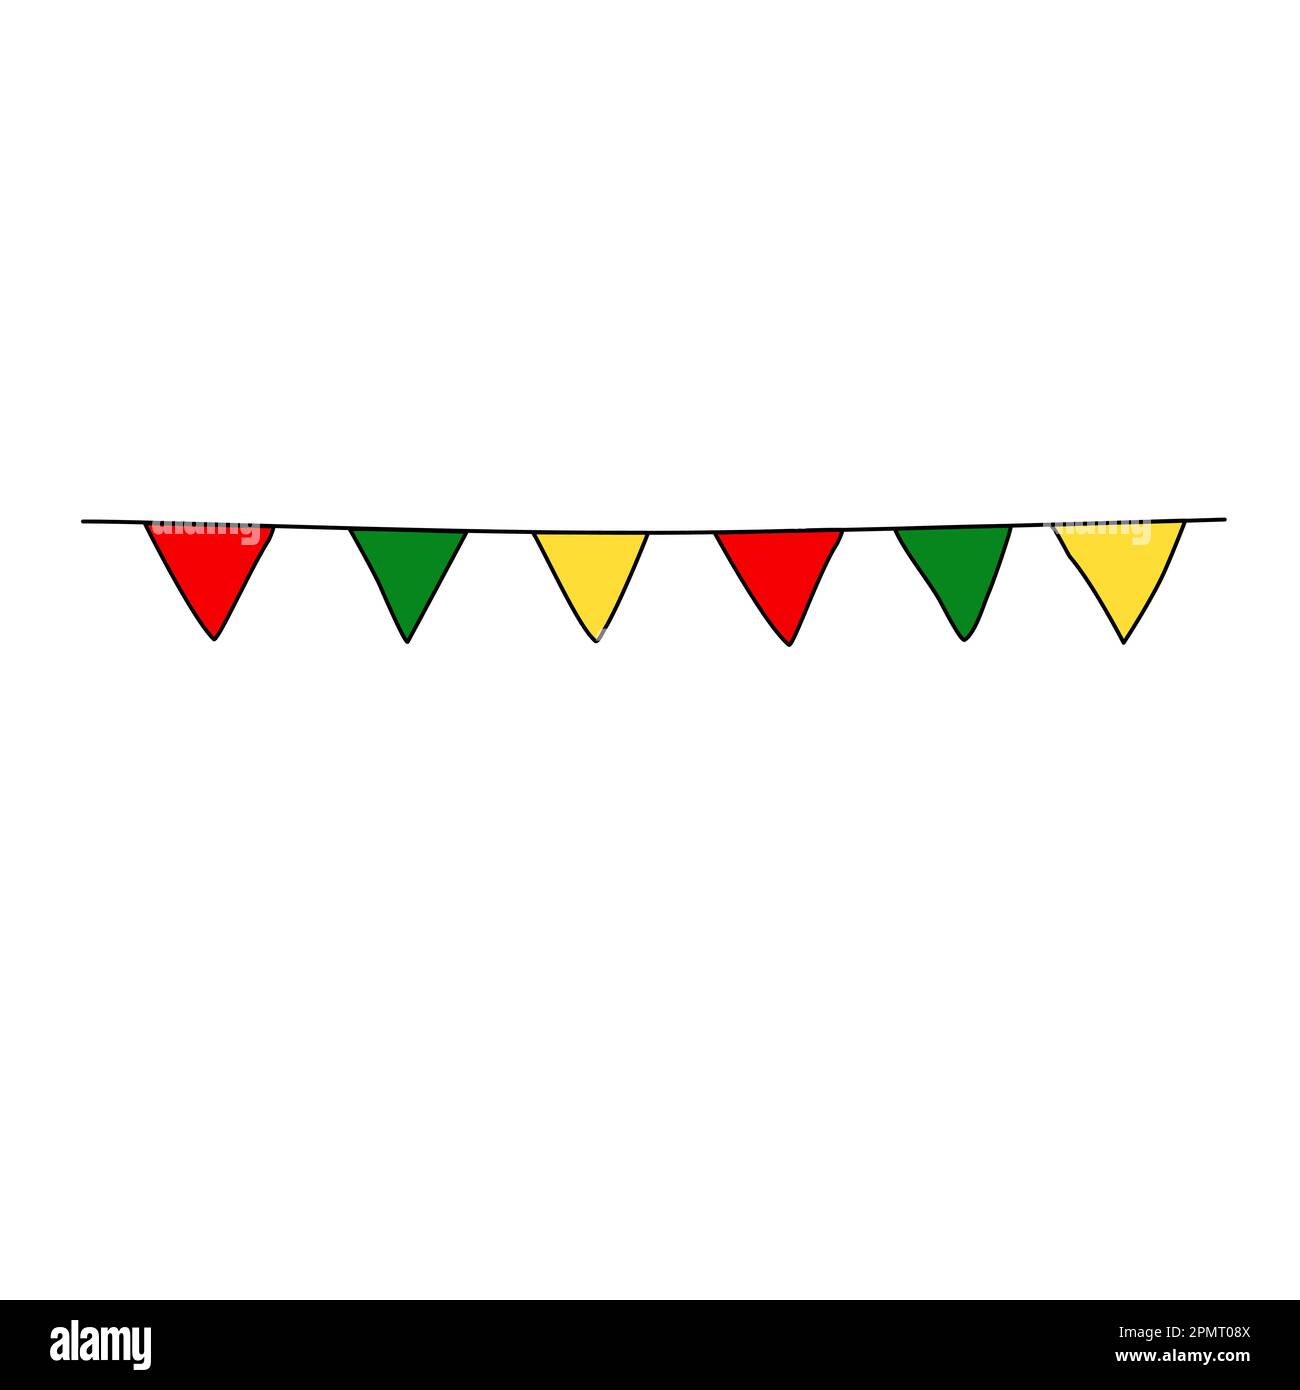 Girlande- oder Wimpelflaggen, rot, grün, gelb, mexikanische Farben, Vektordarstellung im Kritzelstil Stock Vektor